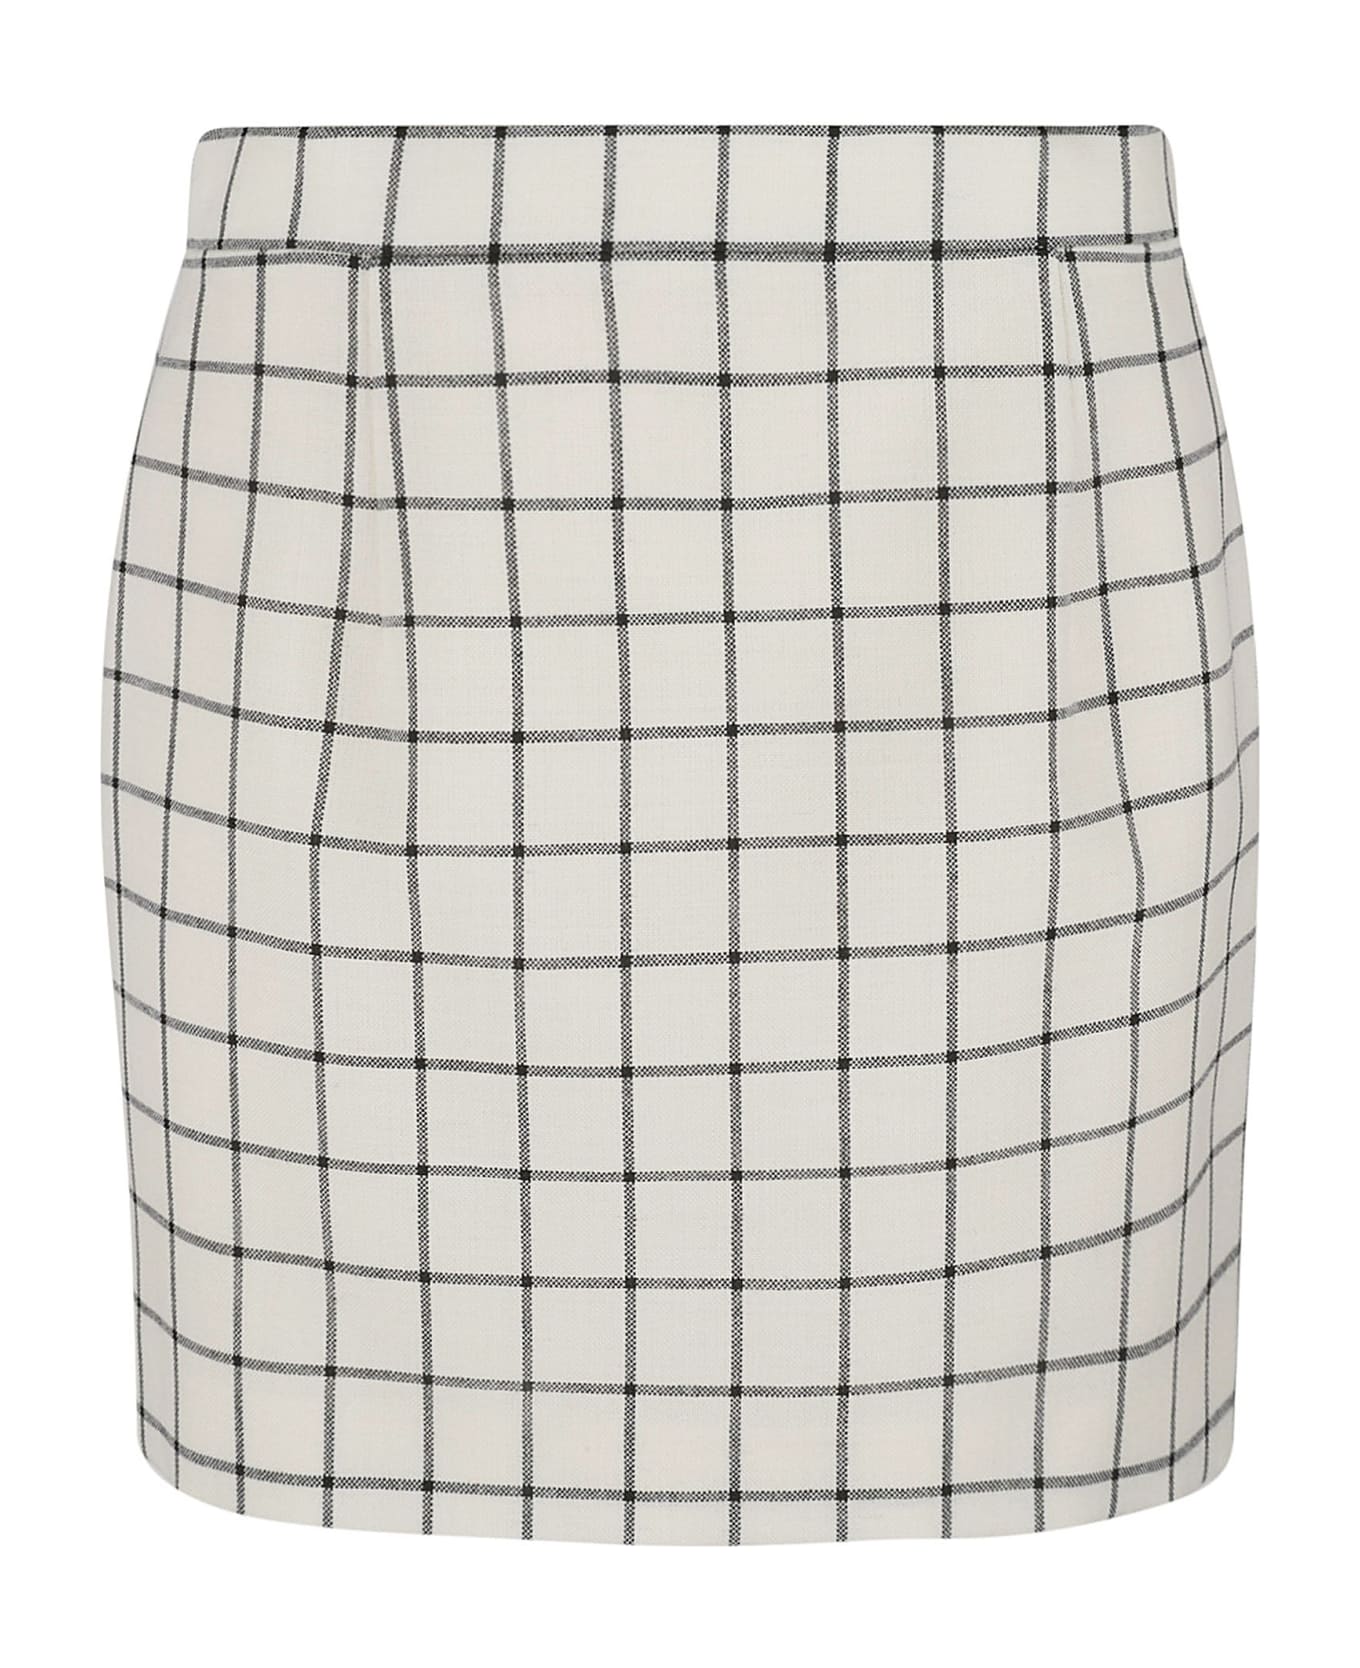 Marni Check Print Skirt - Stone White